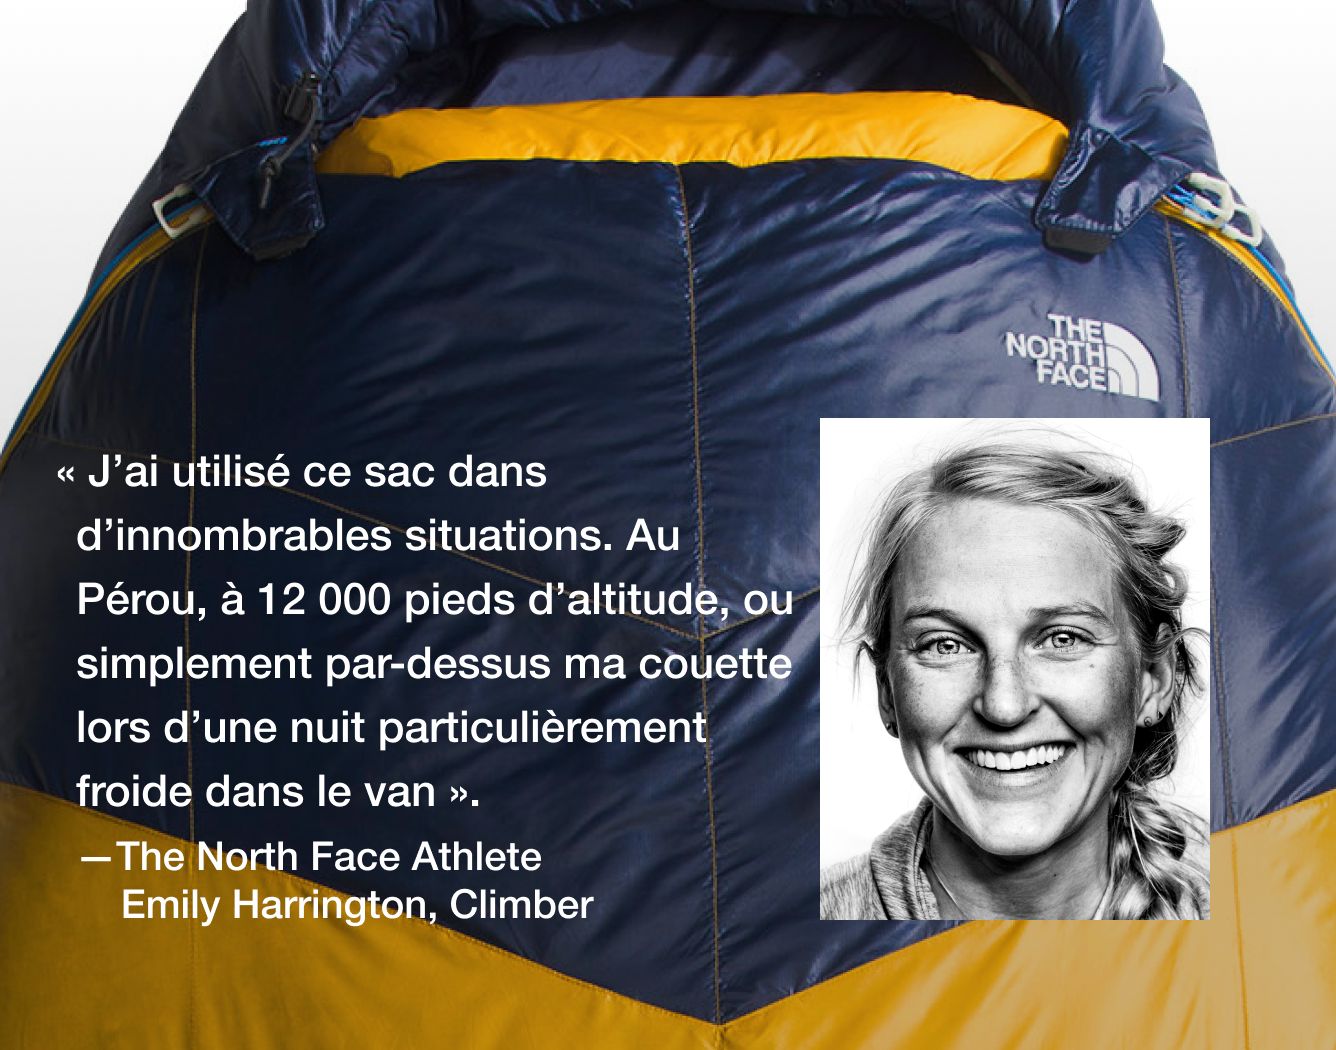  « J’ai utilisé ce sac dans d’innombrables situations. Au Pérou, à 12 000 pieds d’altitude, ou simplement par-dessus ma couette lors d’une nuit particulièrement froide dans le van.   – Emily Harrington, athlète The North Face  